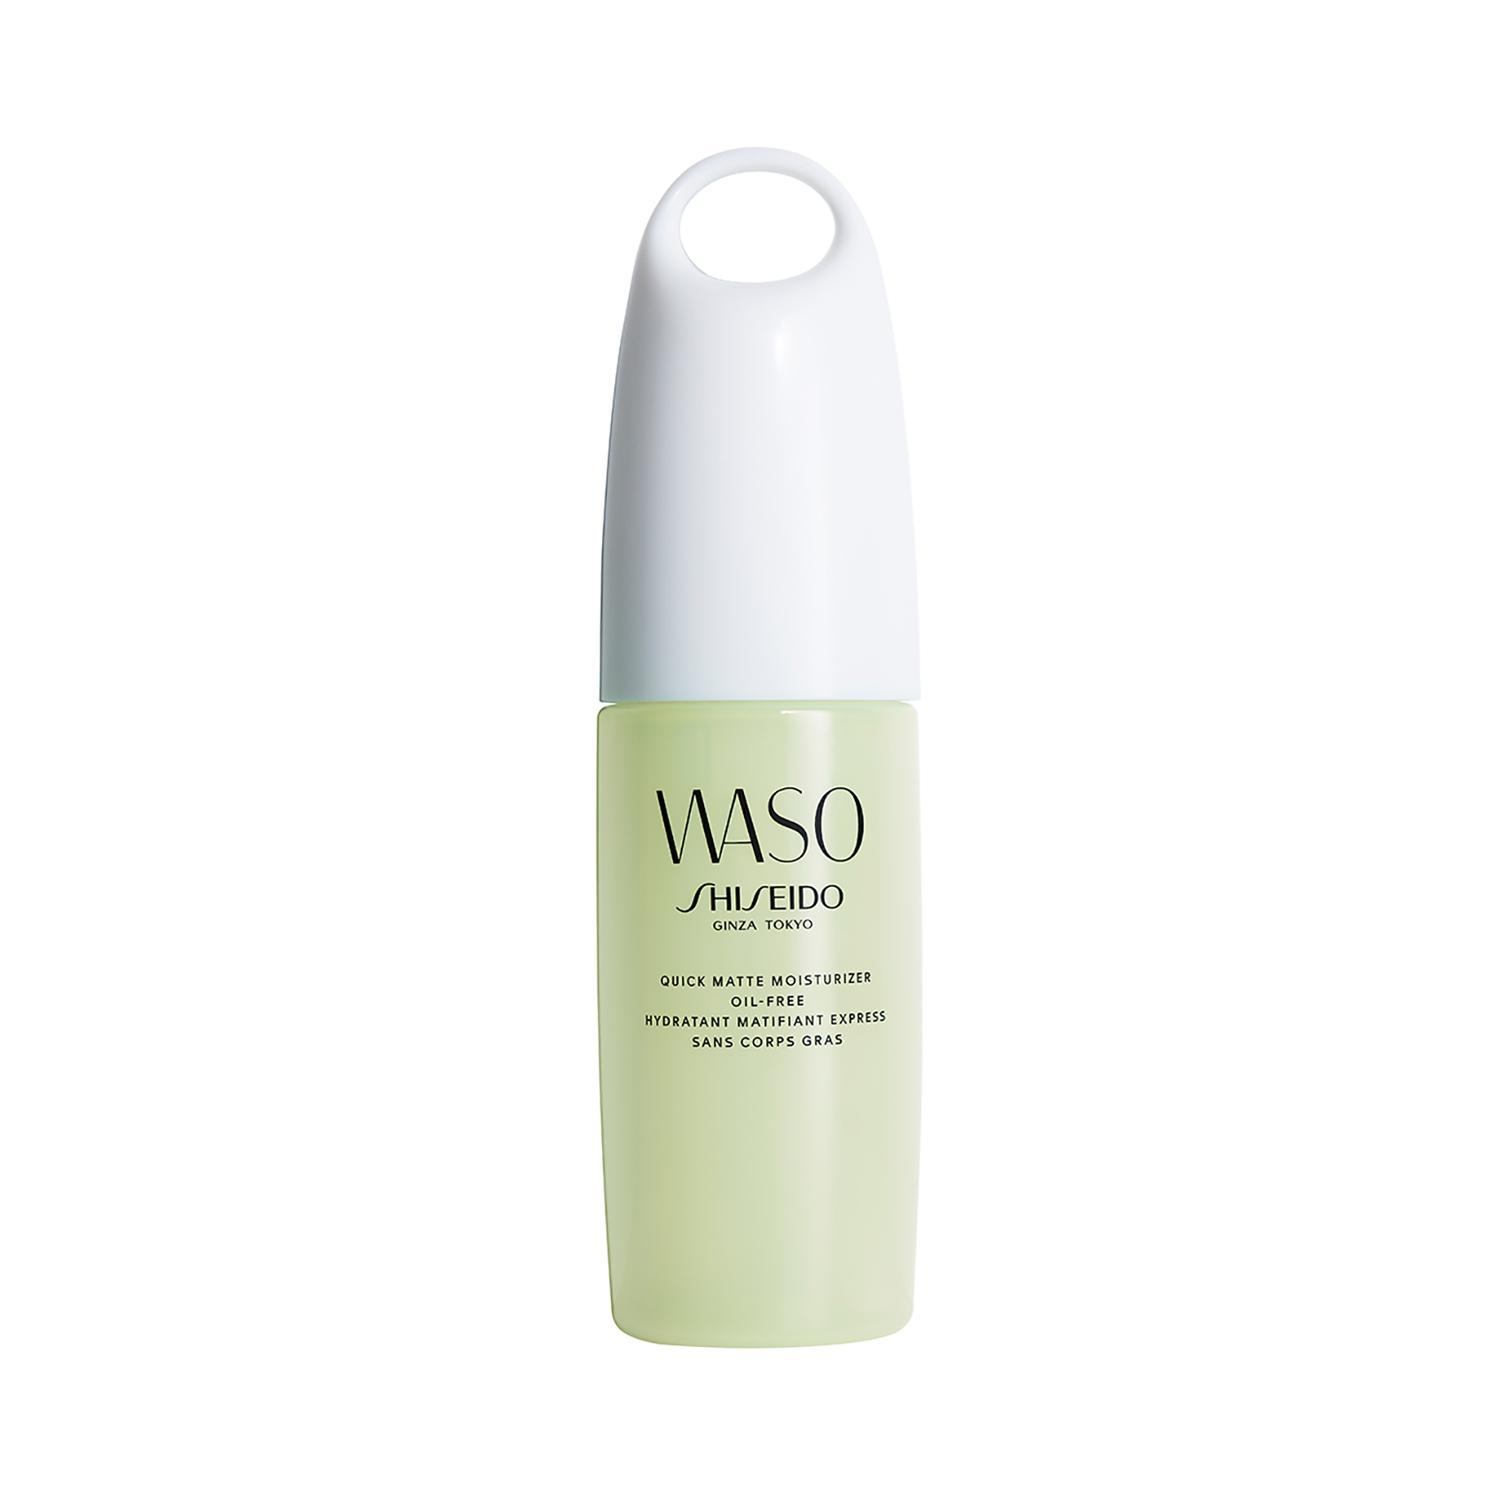 shiseido waso quick matt oil free moisturizer (75ml)